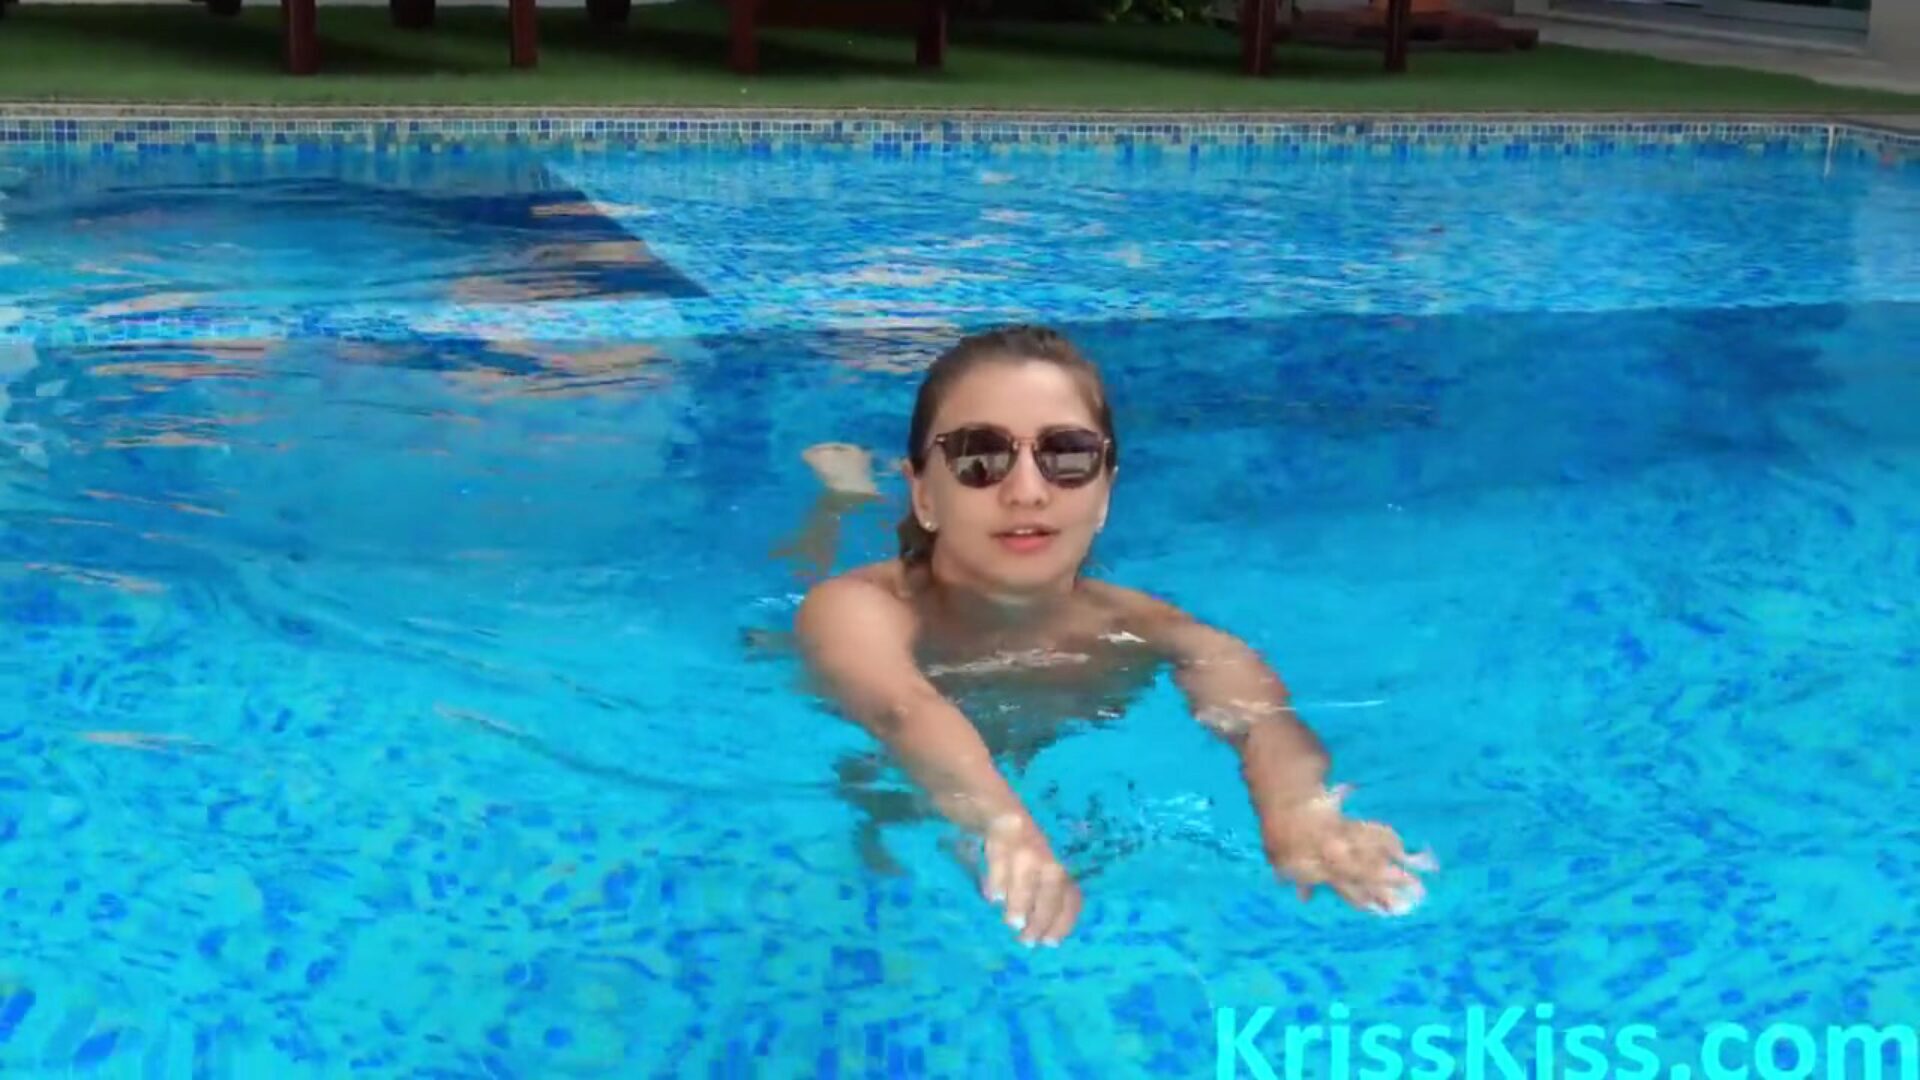 ילדה מוצצת עמוק זין גדול בבריכה - צילום מקרוב אורגזמה